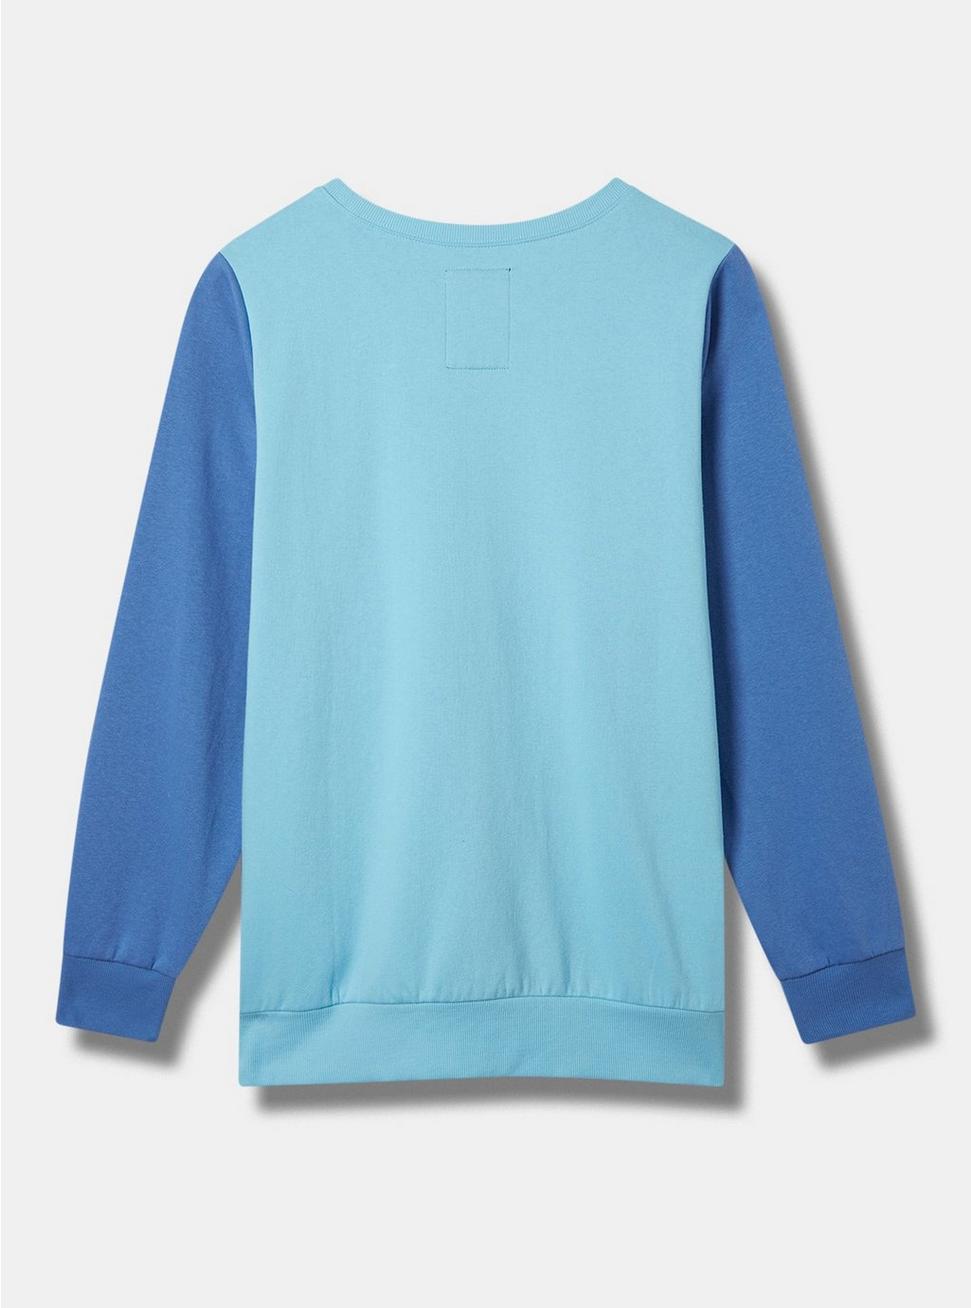 Pochacco Cozy Fleece Color Block Sweatshirt, BLUE, alternate